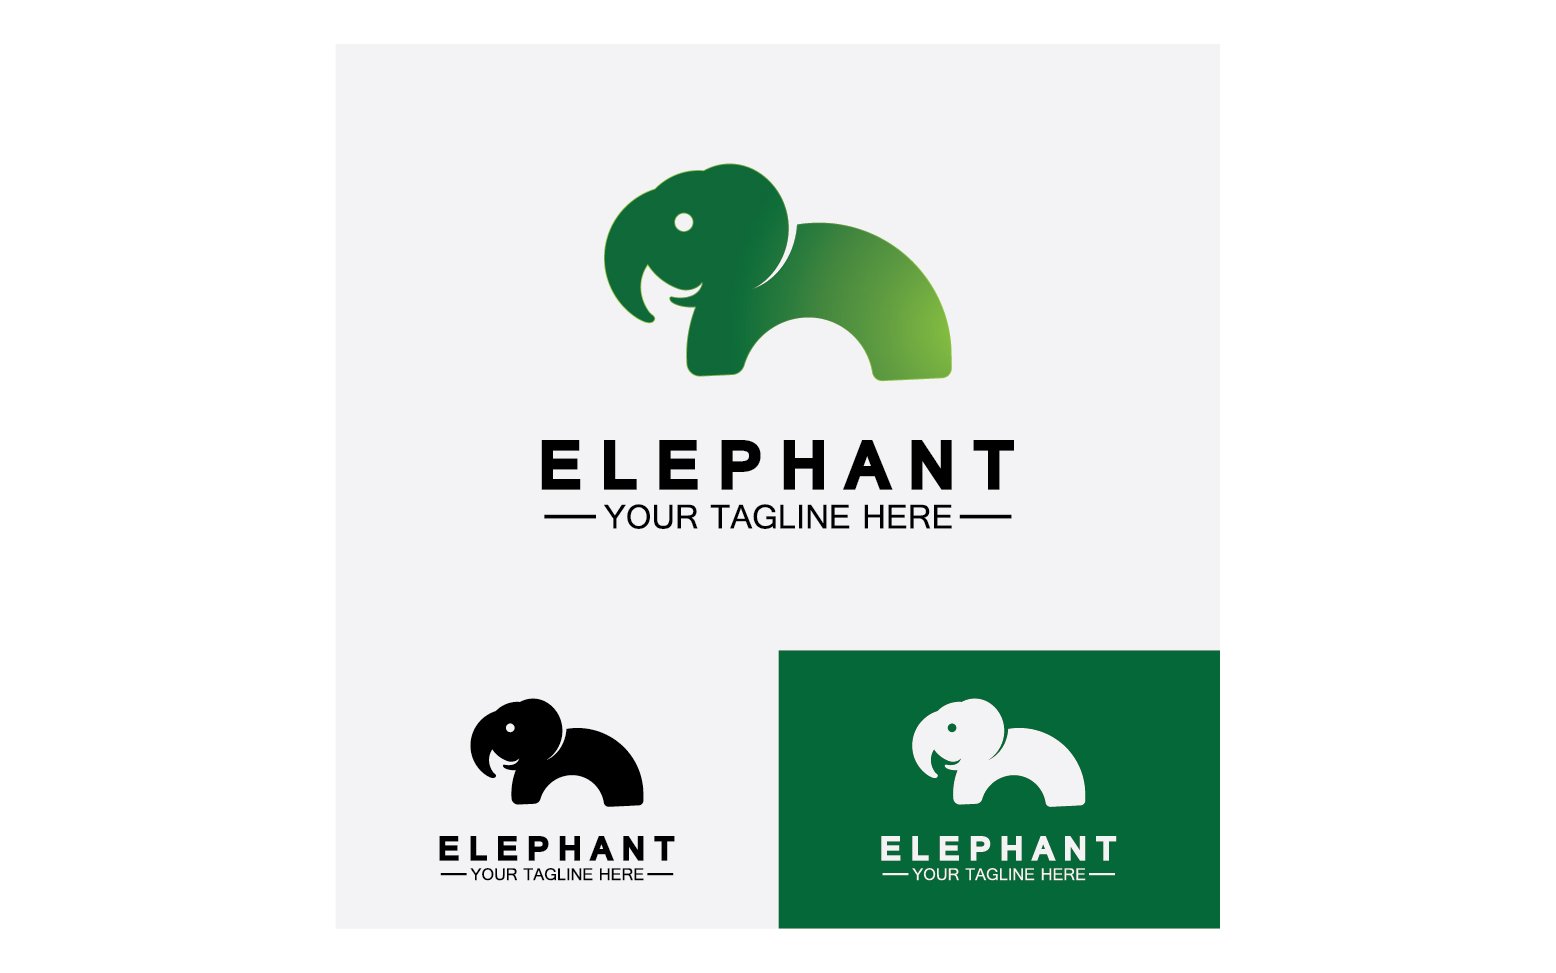 Kit Graphique #355989 Animal lphant Divers Modles Web - Logo template Preview